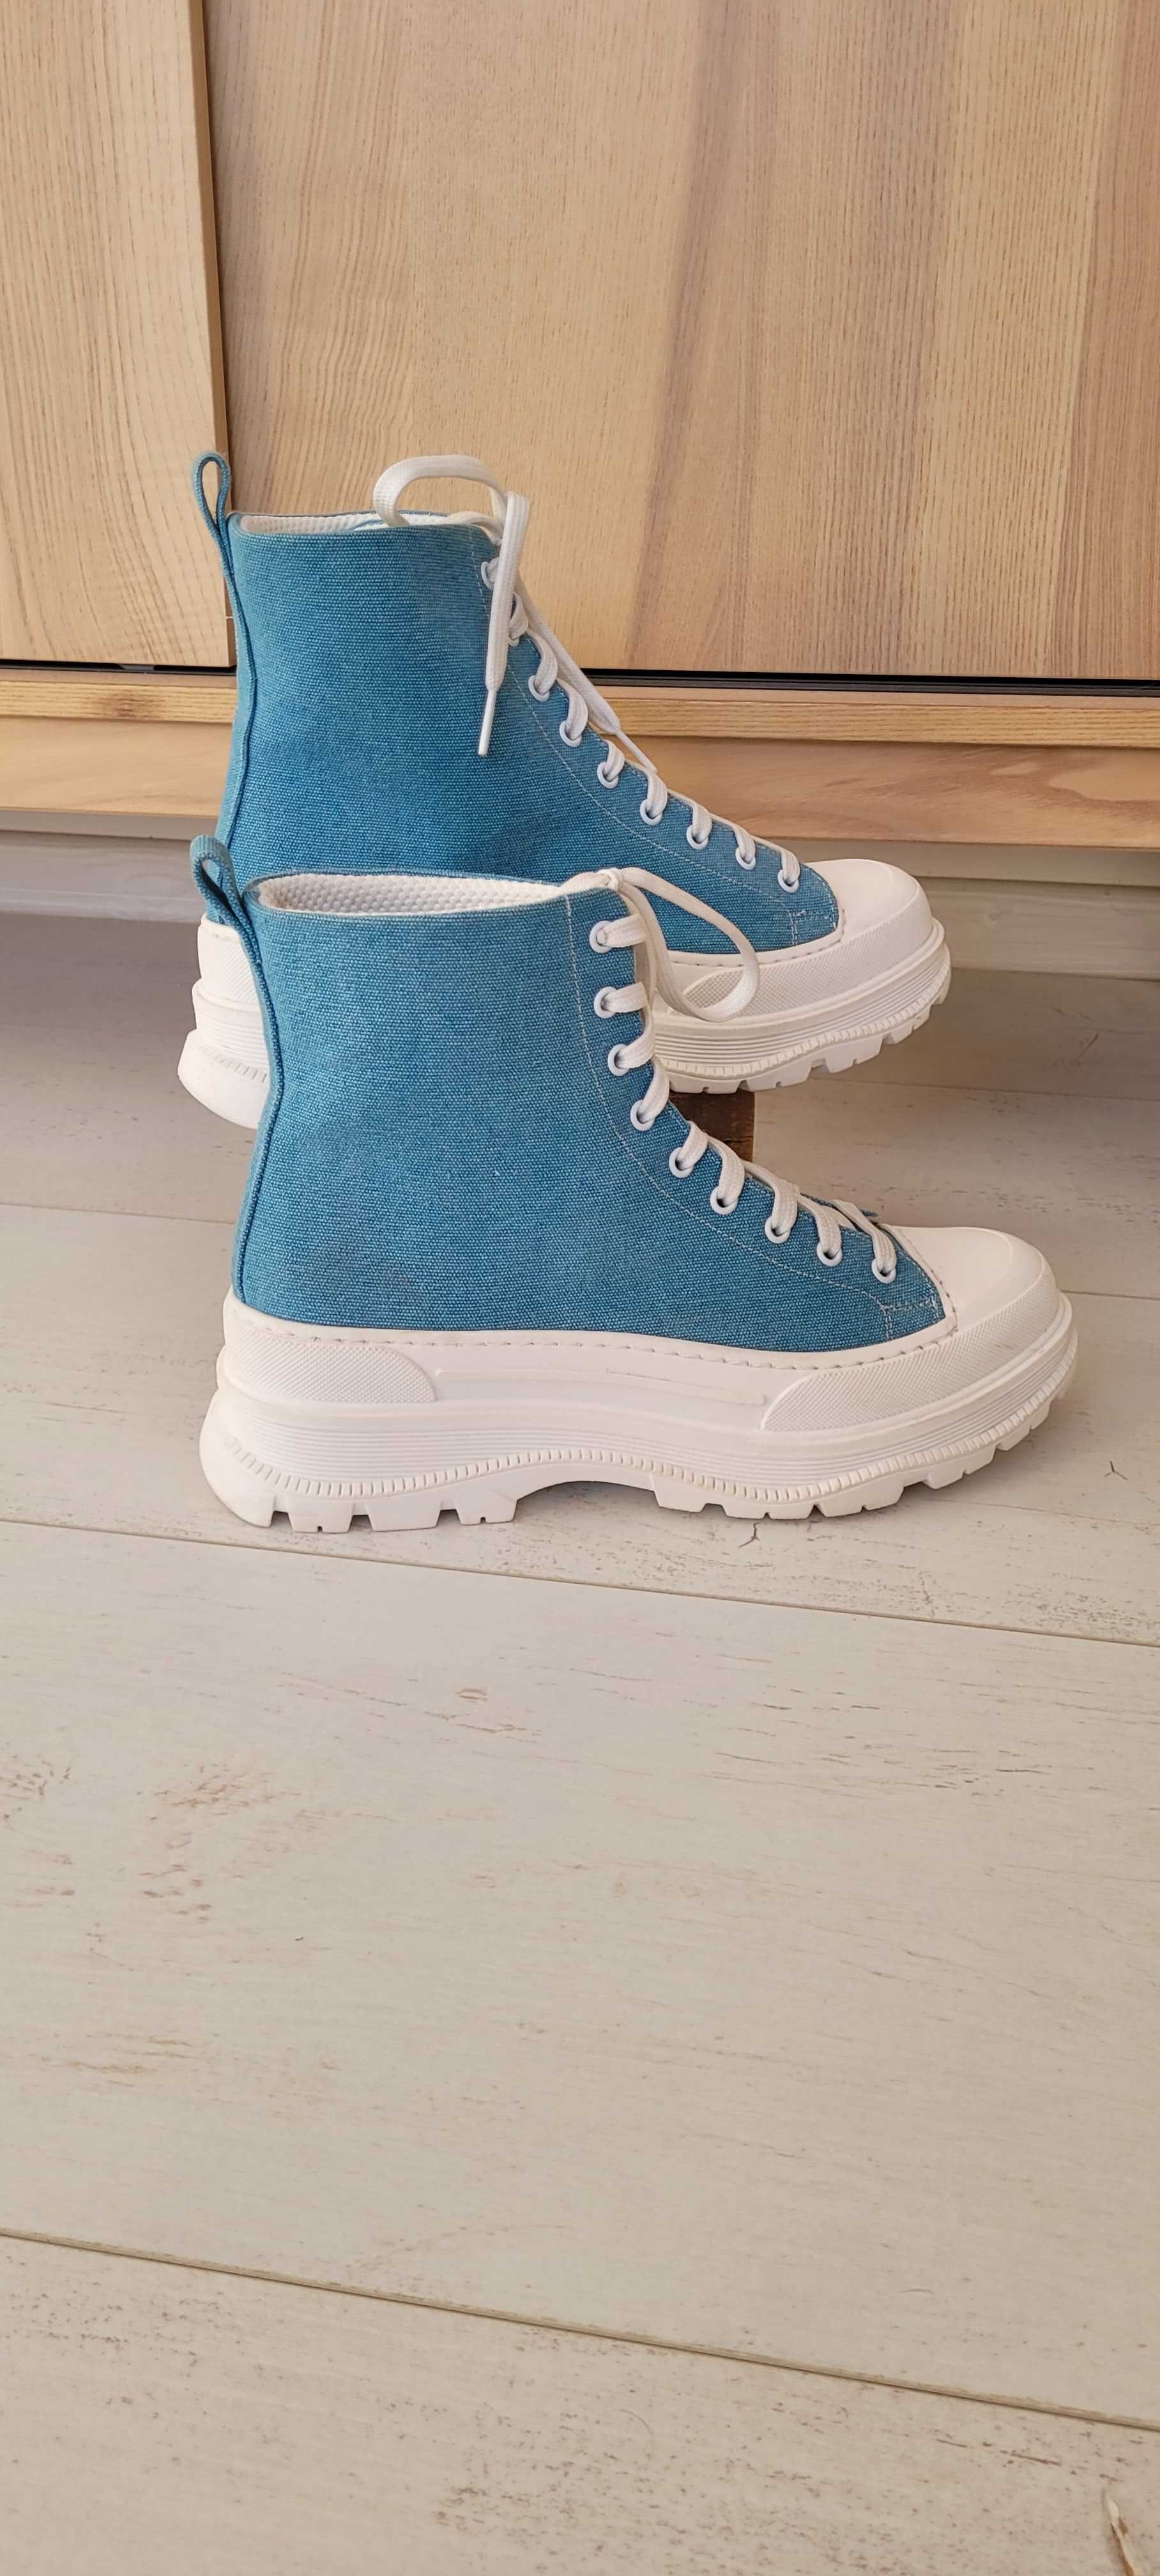 Niebieskie buty trampki wysokie włoskie L'Estrosa,rozmiar 39